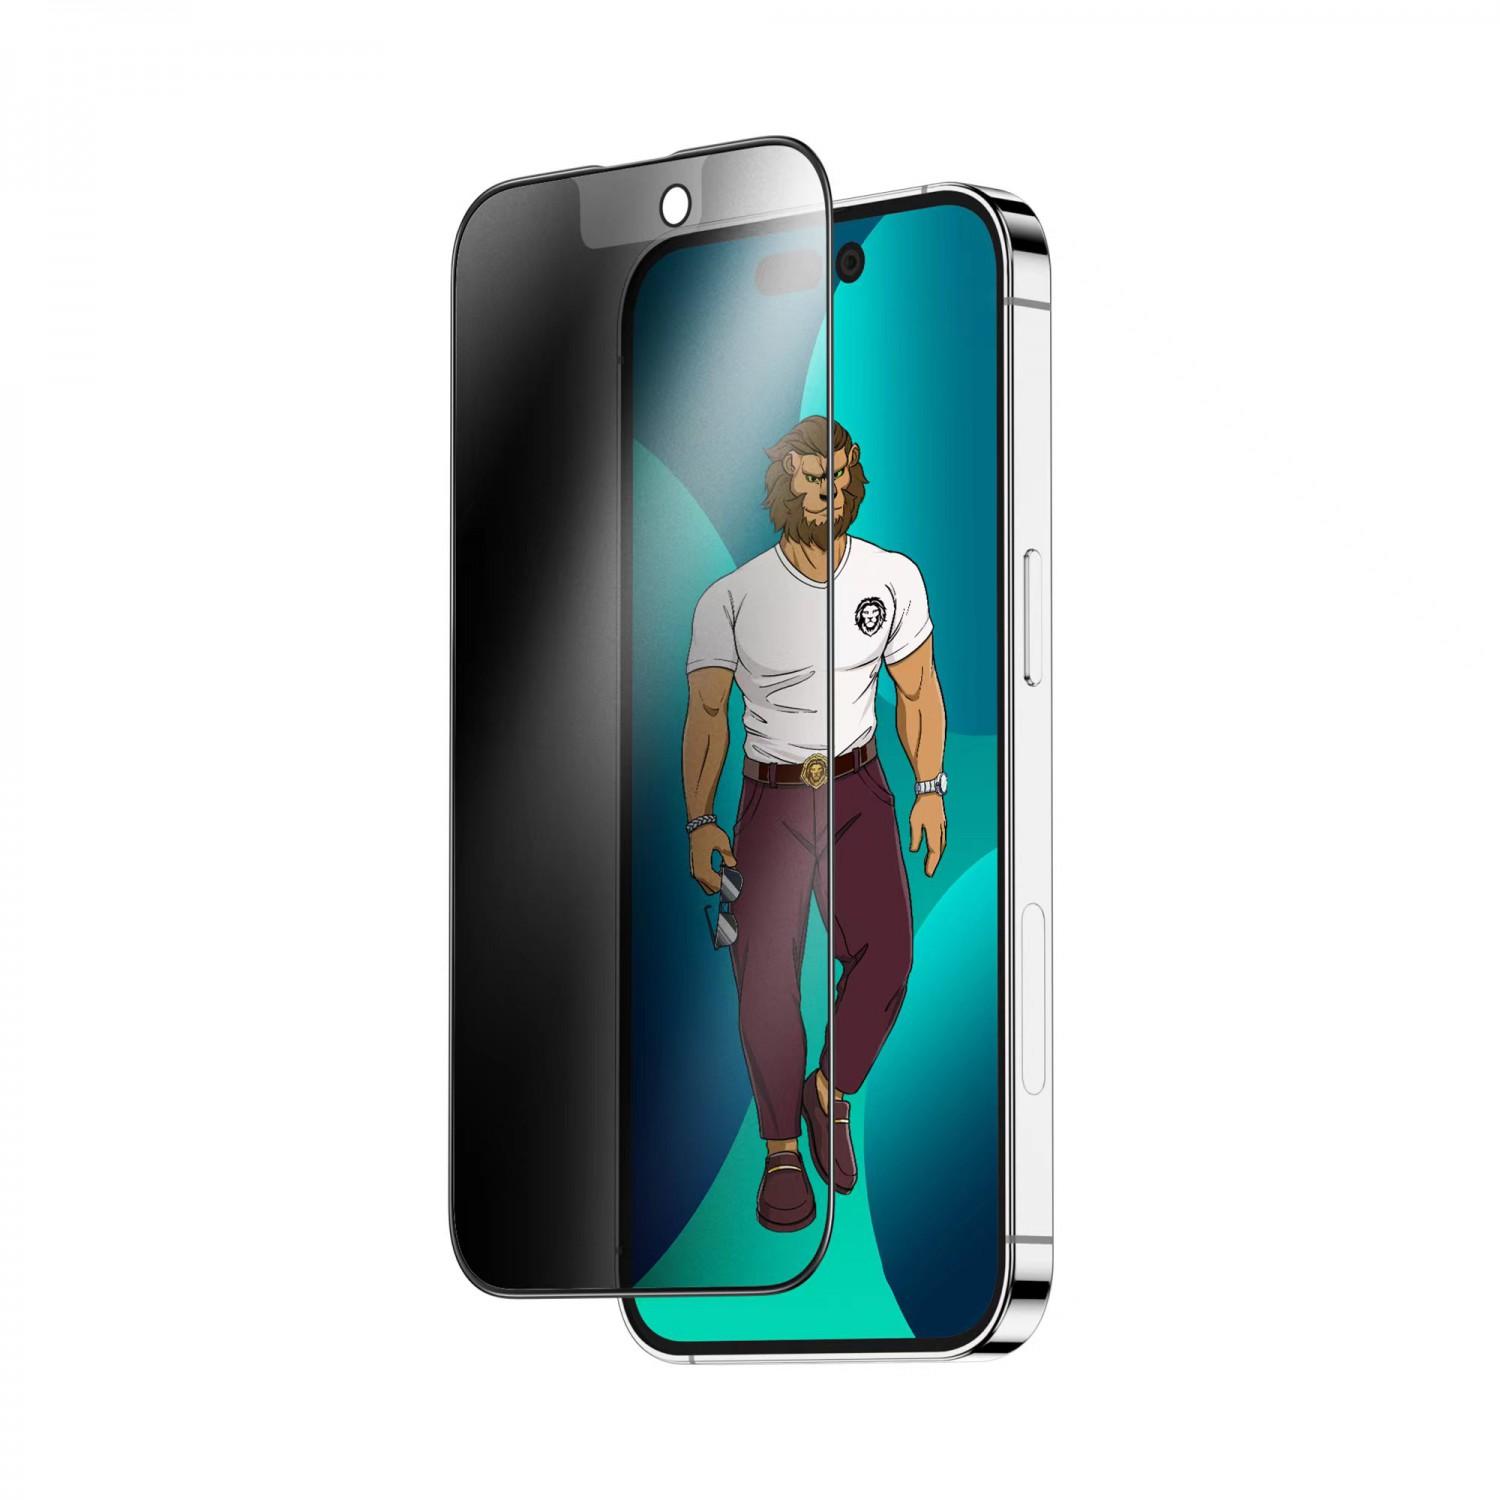 لاصقة حماية الشاشة لموبايل ايفون 14 برو ماكس زجاجية جرين Green 3D AG/Matte Privacy Glass Screen Protector for iPhone 14 Pro Max - cG9zdDoxMzc4NzQ5